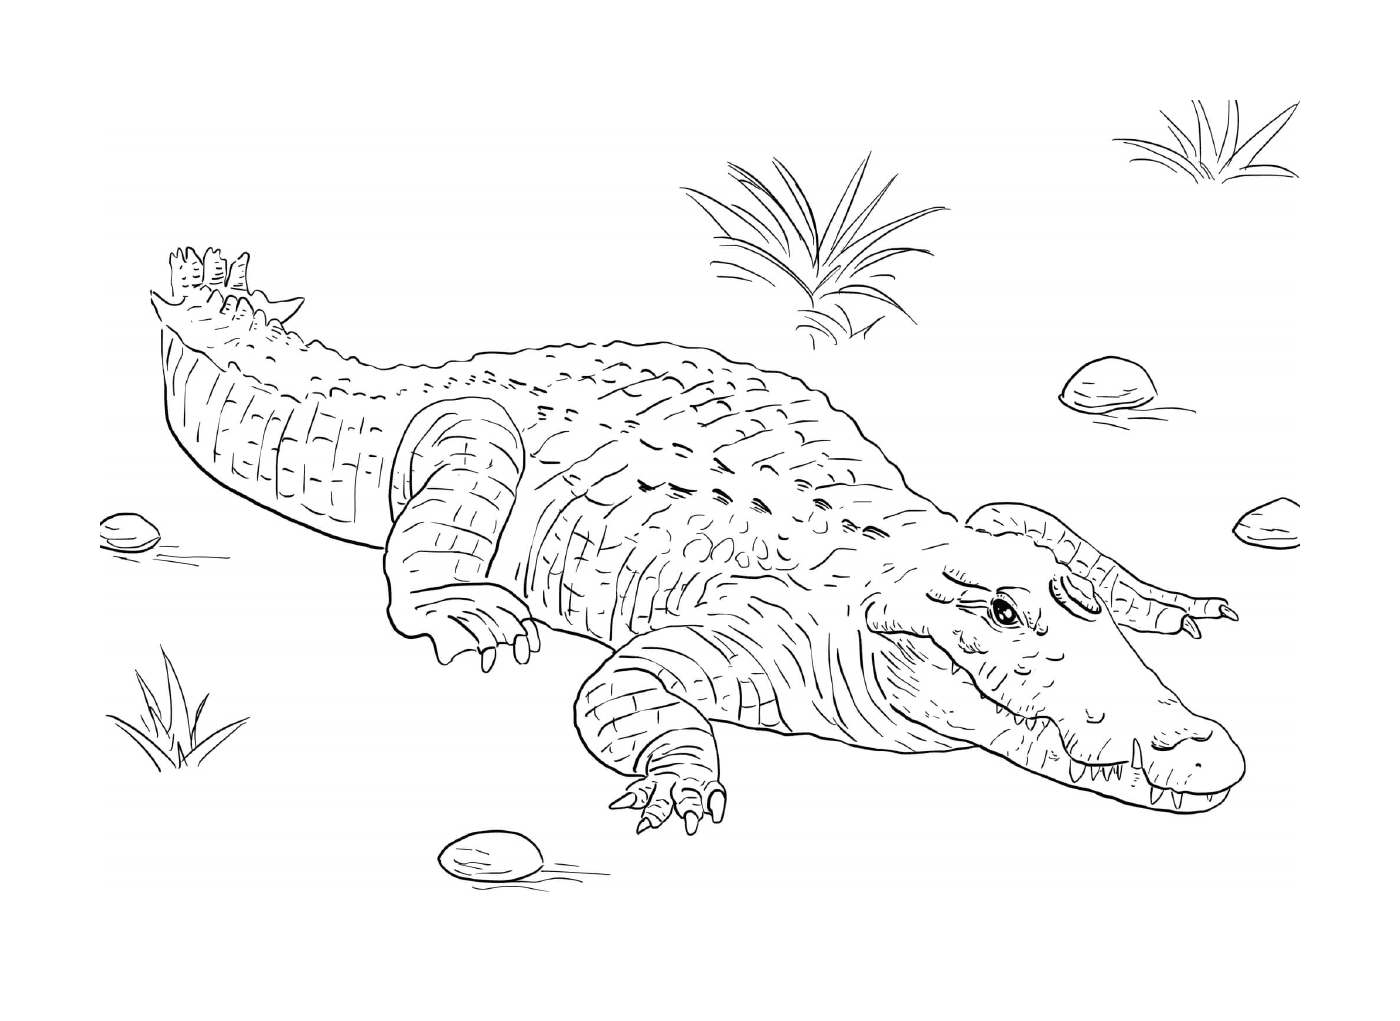  Нил крокодил, лежащий на земле 